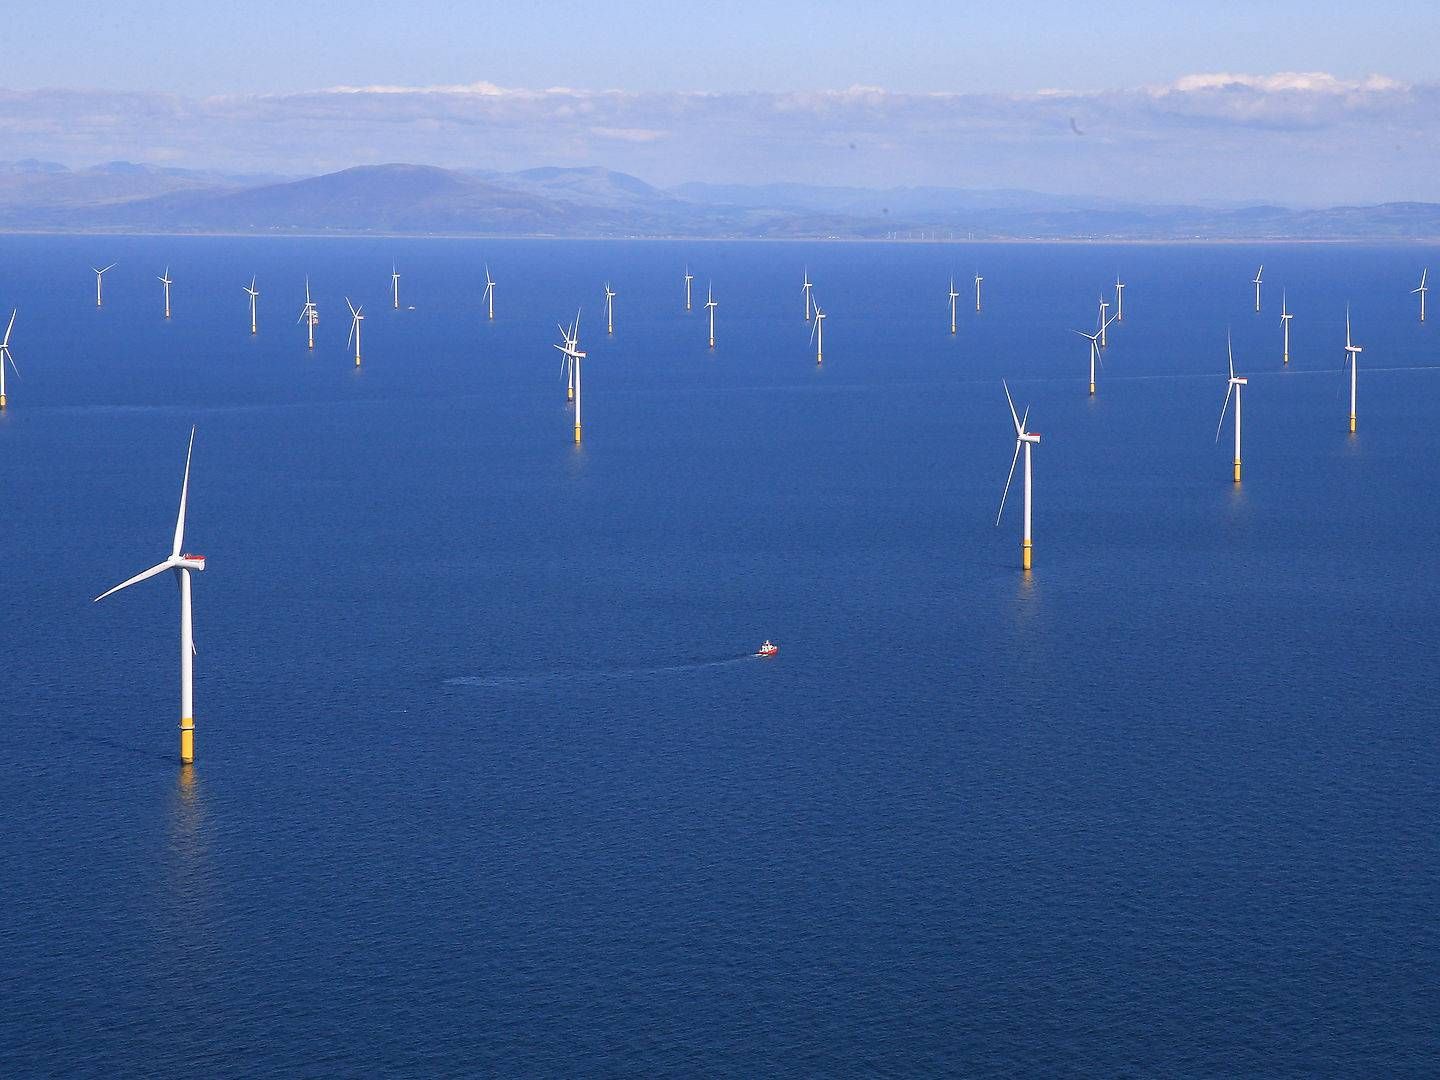 Det er EU-Kommissionens plan at udbygge den nuværende kapacitet for havvindmøller i Europa 25 gange inden 2050. Det fremgår af den offshore-strategi Kommissionen fremlægger onsdag. Her ses Walney Wind Farms, verdens næststørste havvindmøllepark, der ligger i Det Irske Hav, og drives af Ørsted. | Foto: Phil Noble/Reuters/Ritzau Scanpix